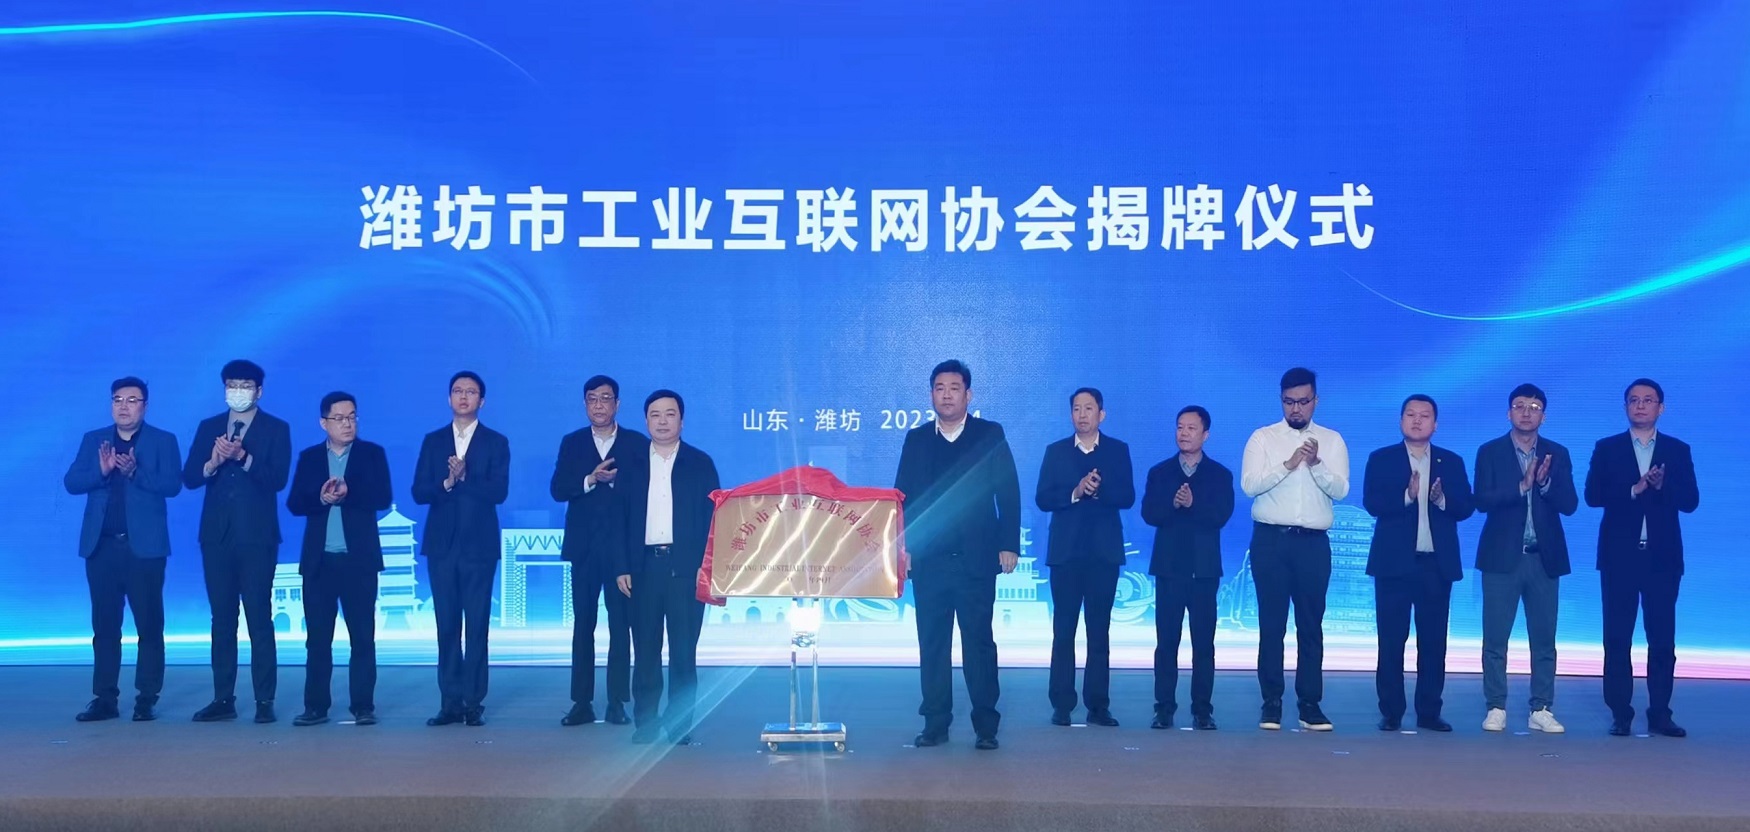 工赋潍坊丨环球软件作为潍坊市工业互联网协会发起单位参加揭牌仪式